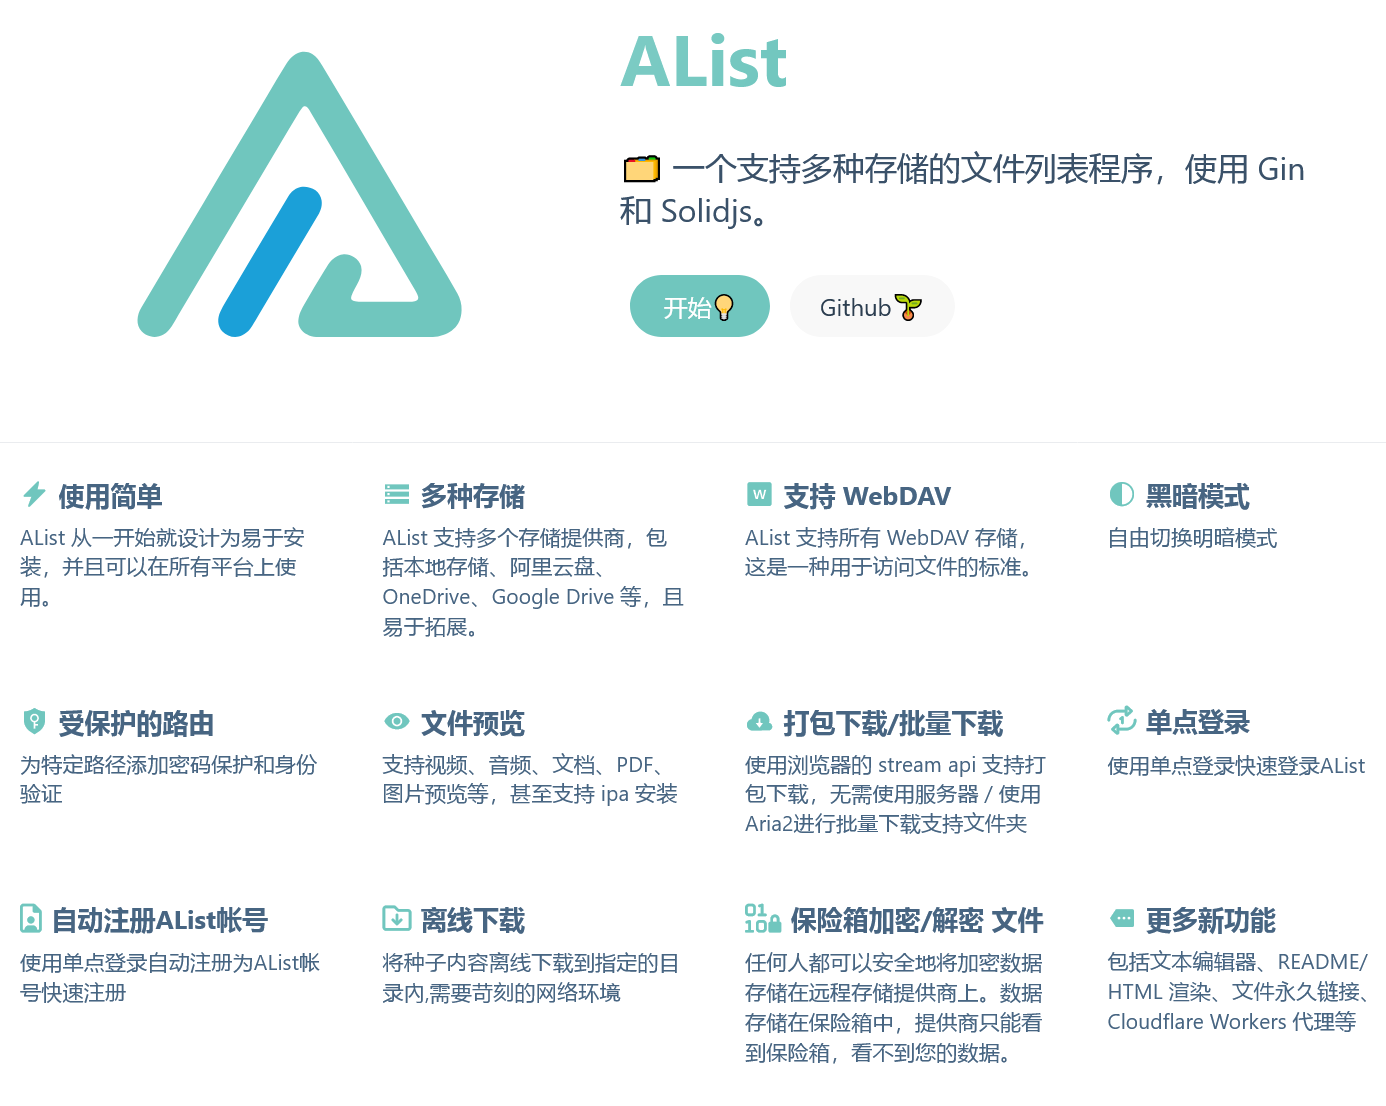 AList (网盘聚合模板) v3.33.0 支持多种存储